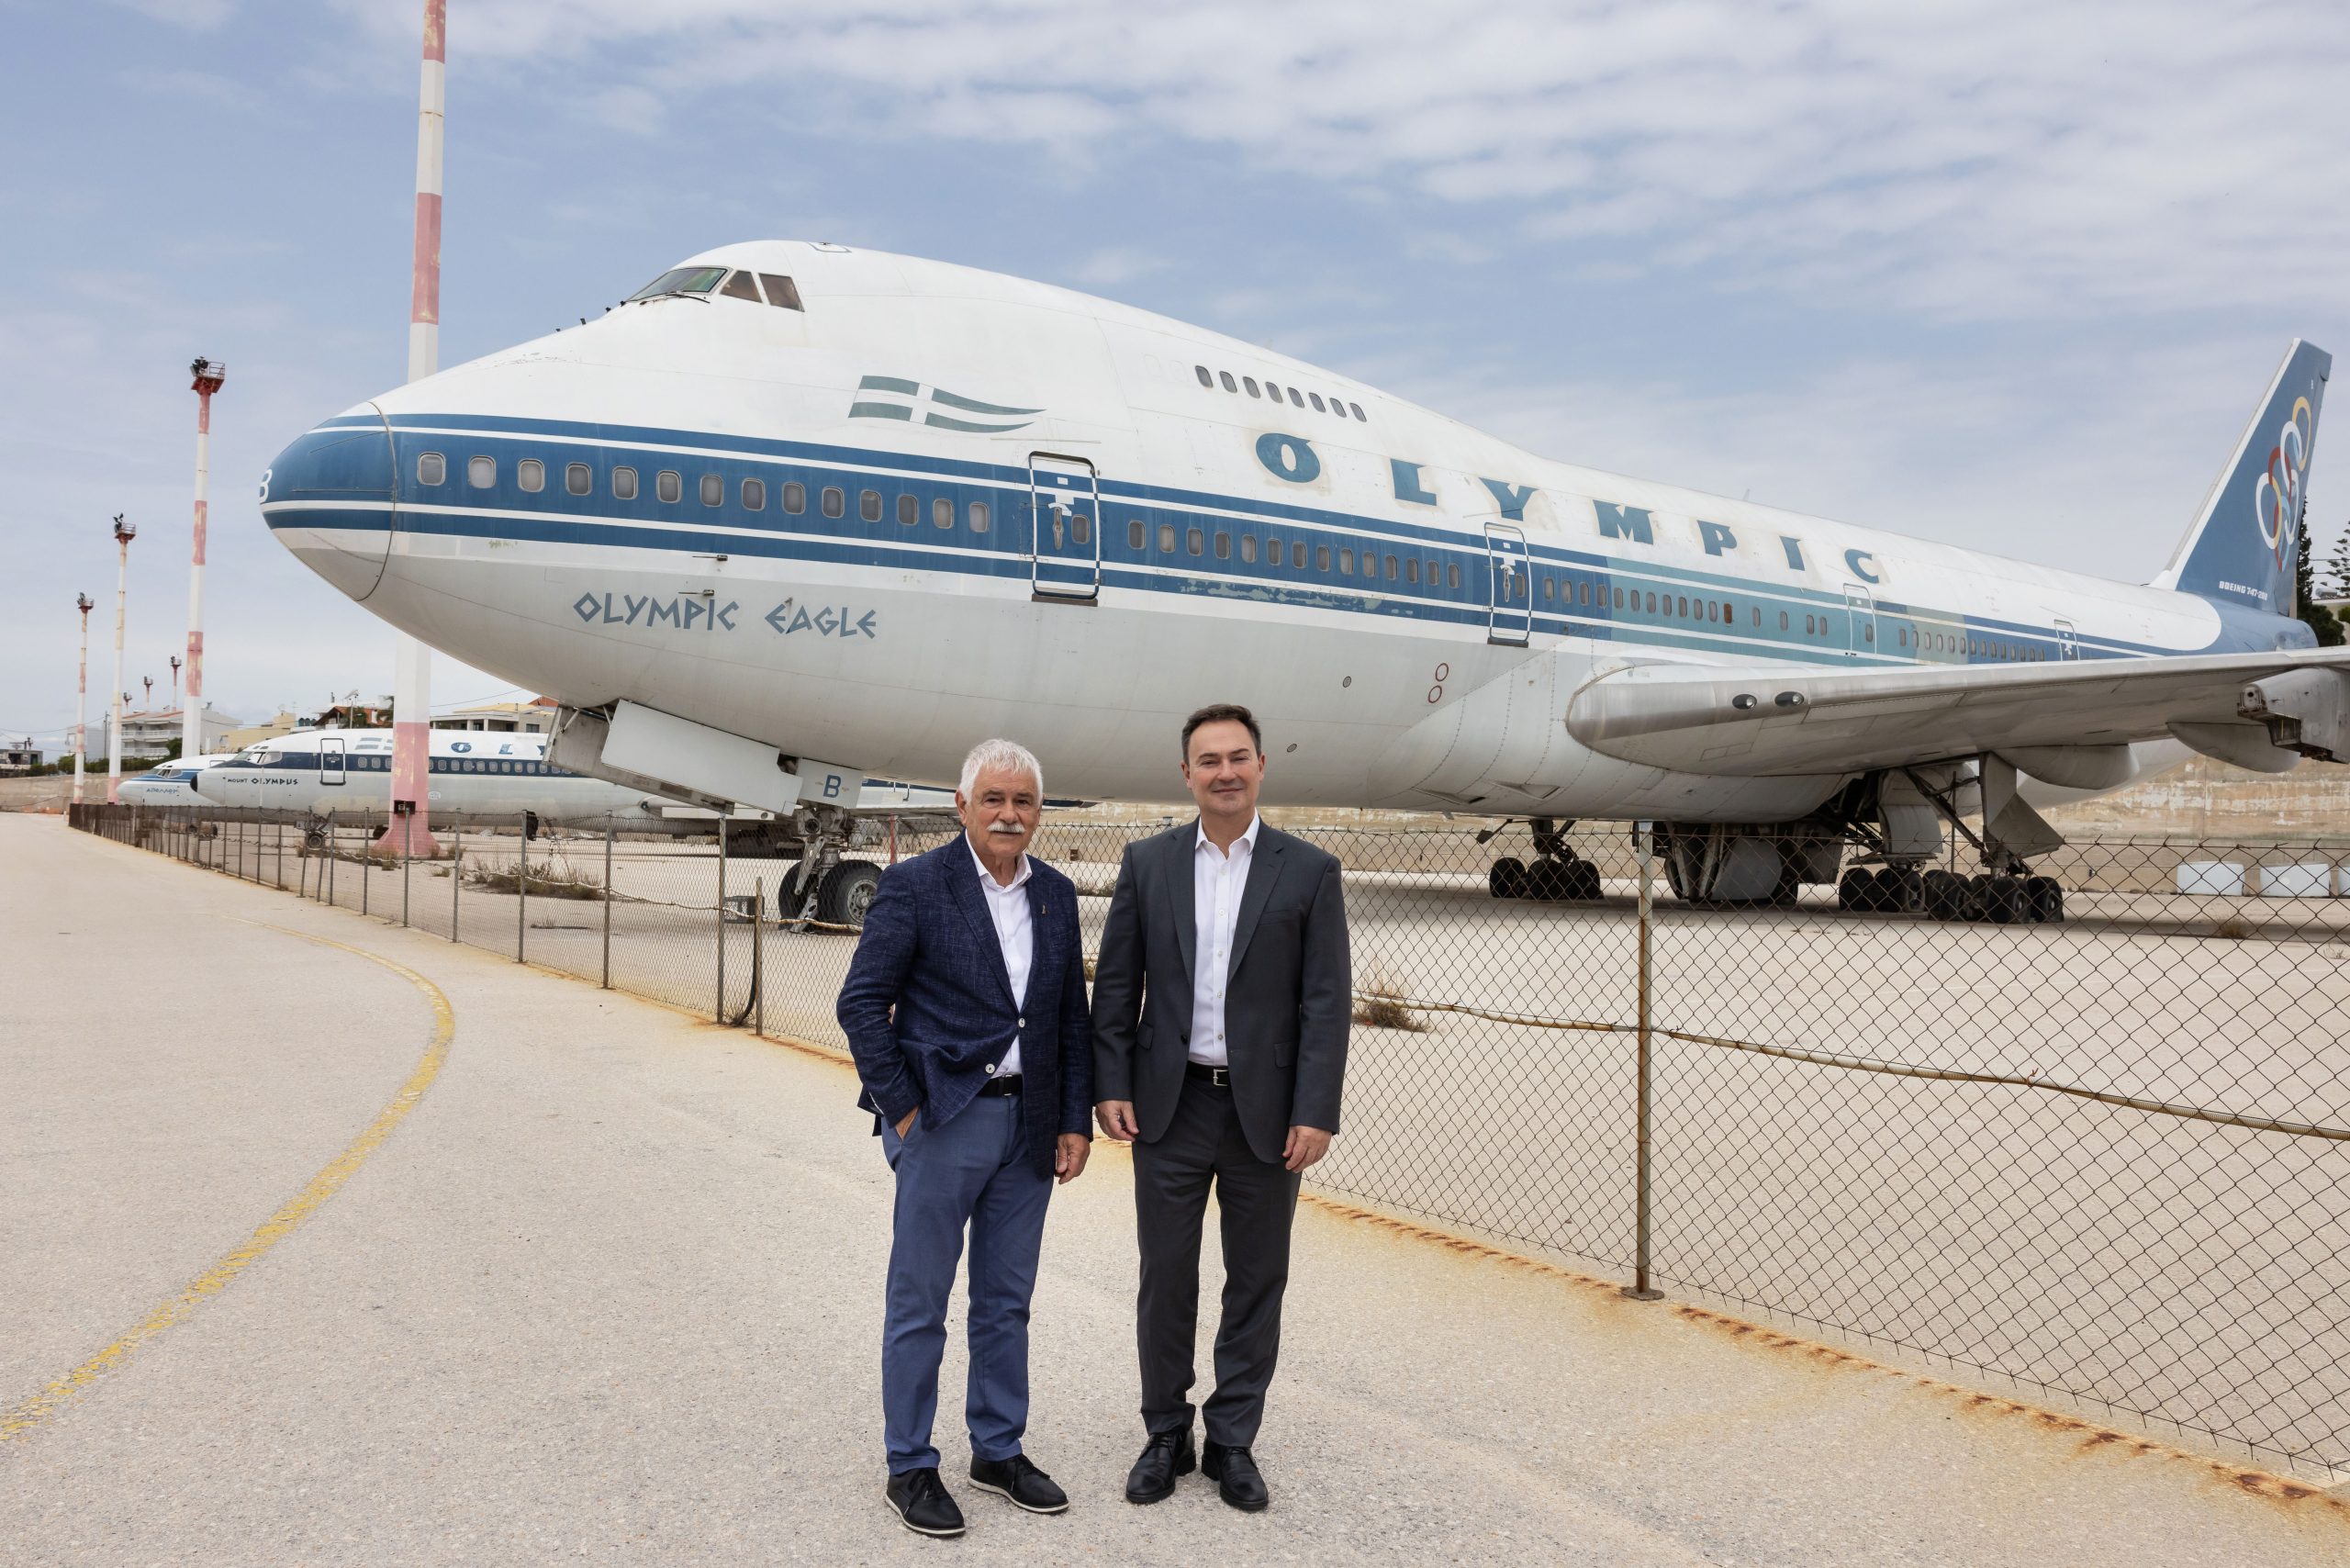 Ελληνικό: Στη Lamda Development τα παλιά αεροπλάνα της Ολυμπιακής - Σχέδιο για μουσείο στο Boeing 747